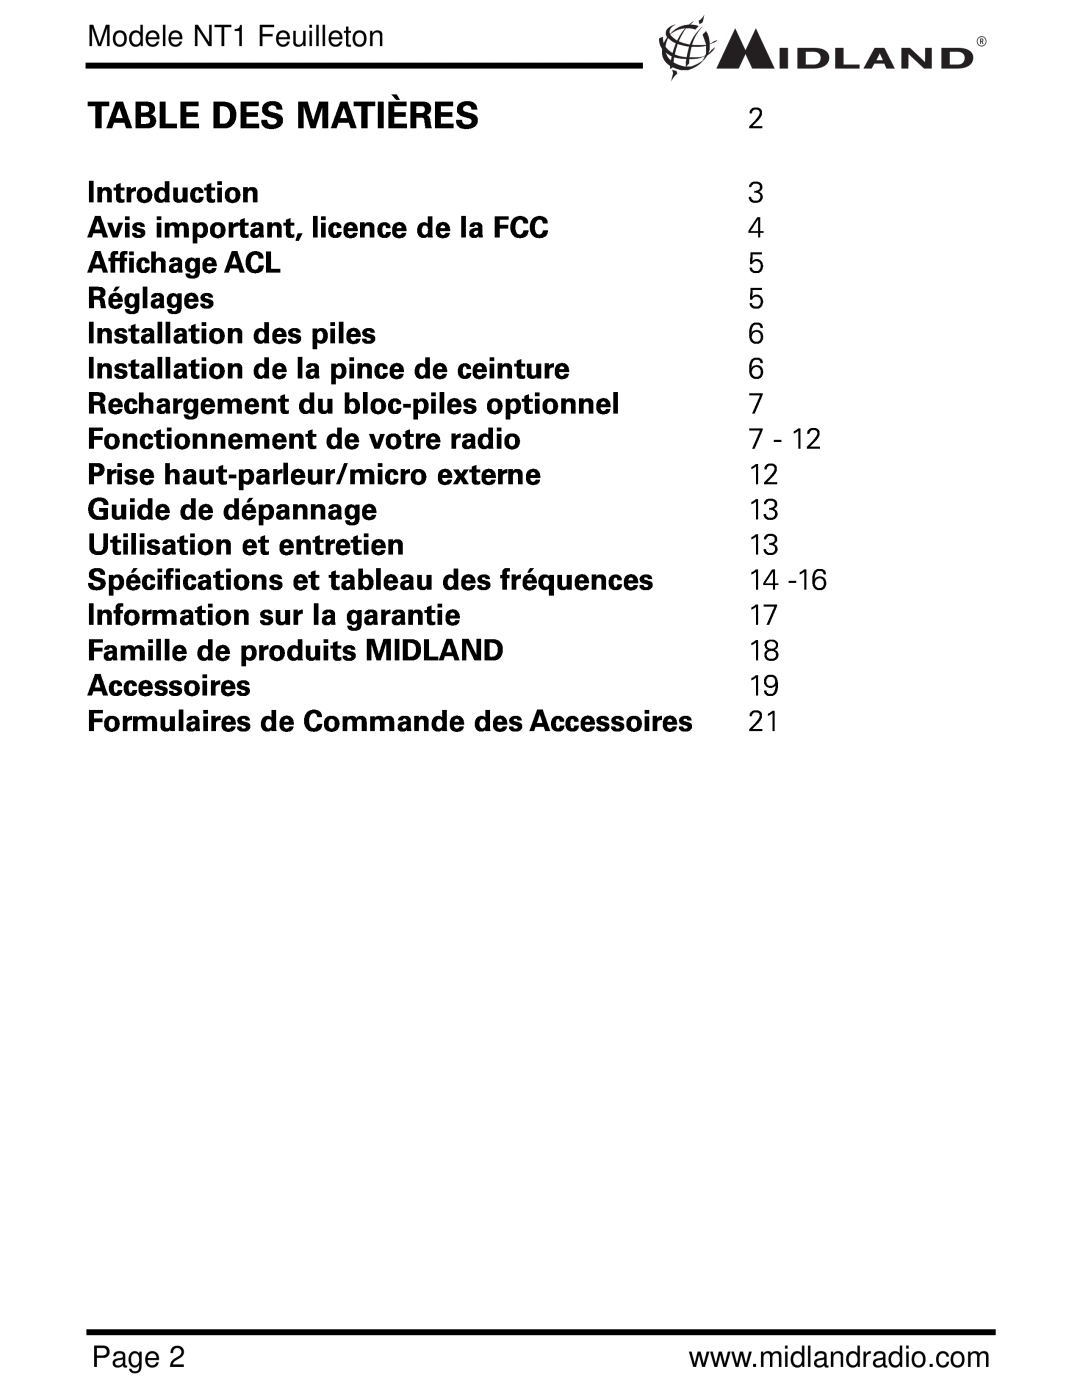 Midland Radio NT1VP Table Des Matières, Modele NT1 Feuilleton, Avis important, licence de la FCC, Affichage ACL, Réglages 